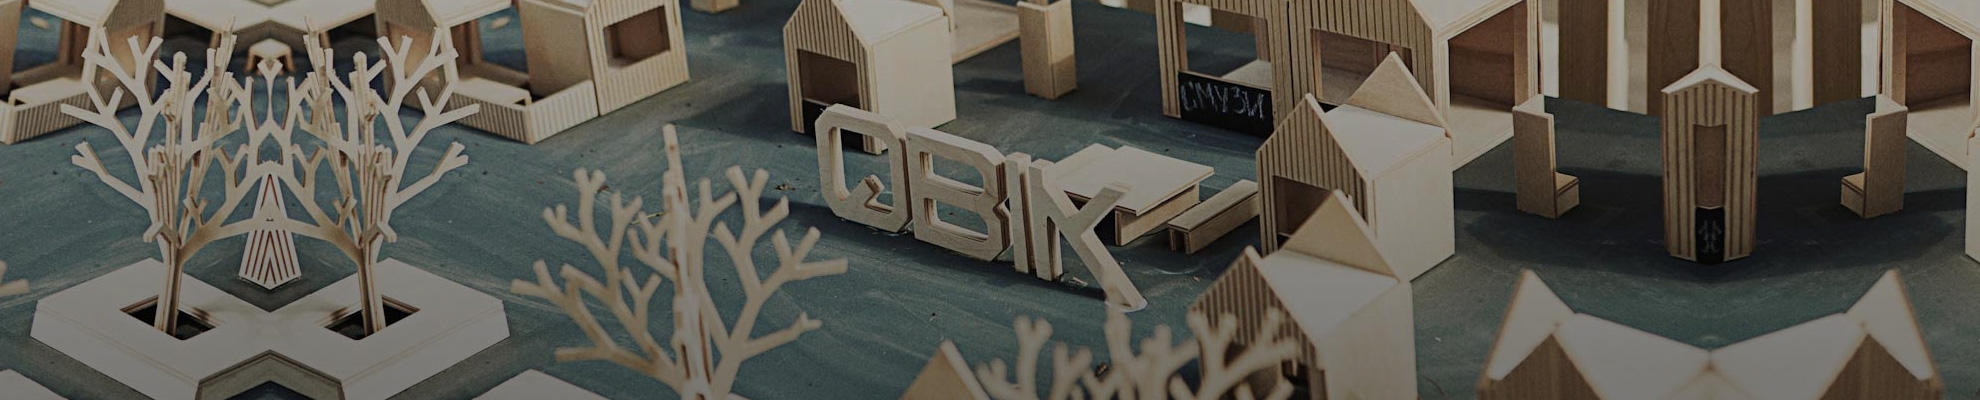 EN ПОСЕТИТЬ Мастер-класс основателя проекта Qbik «Как создать фестивальный город»